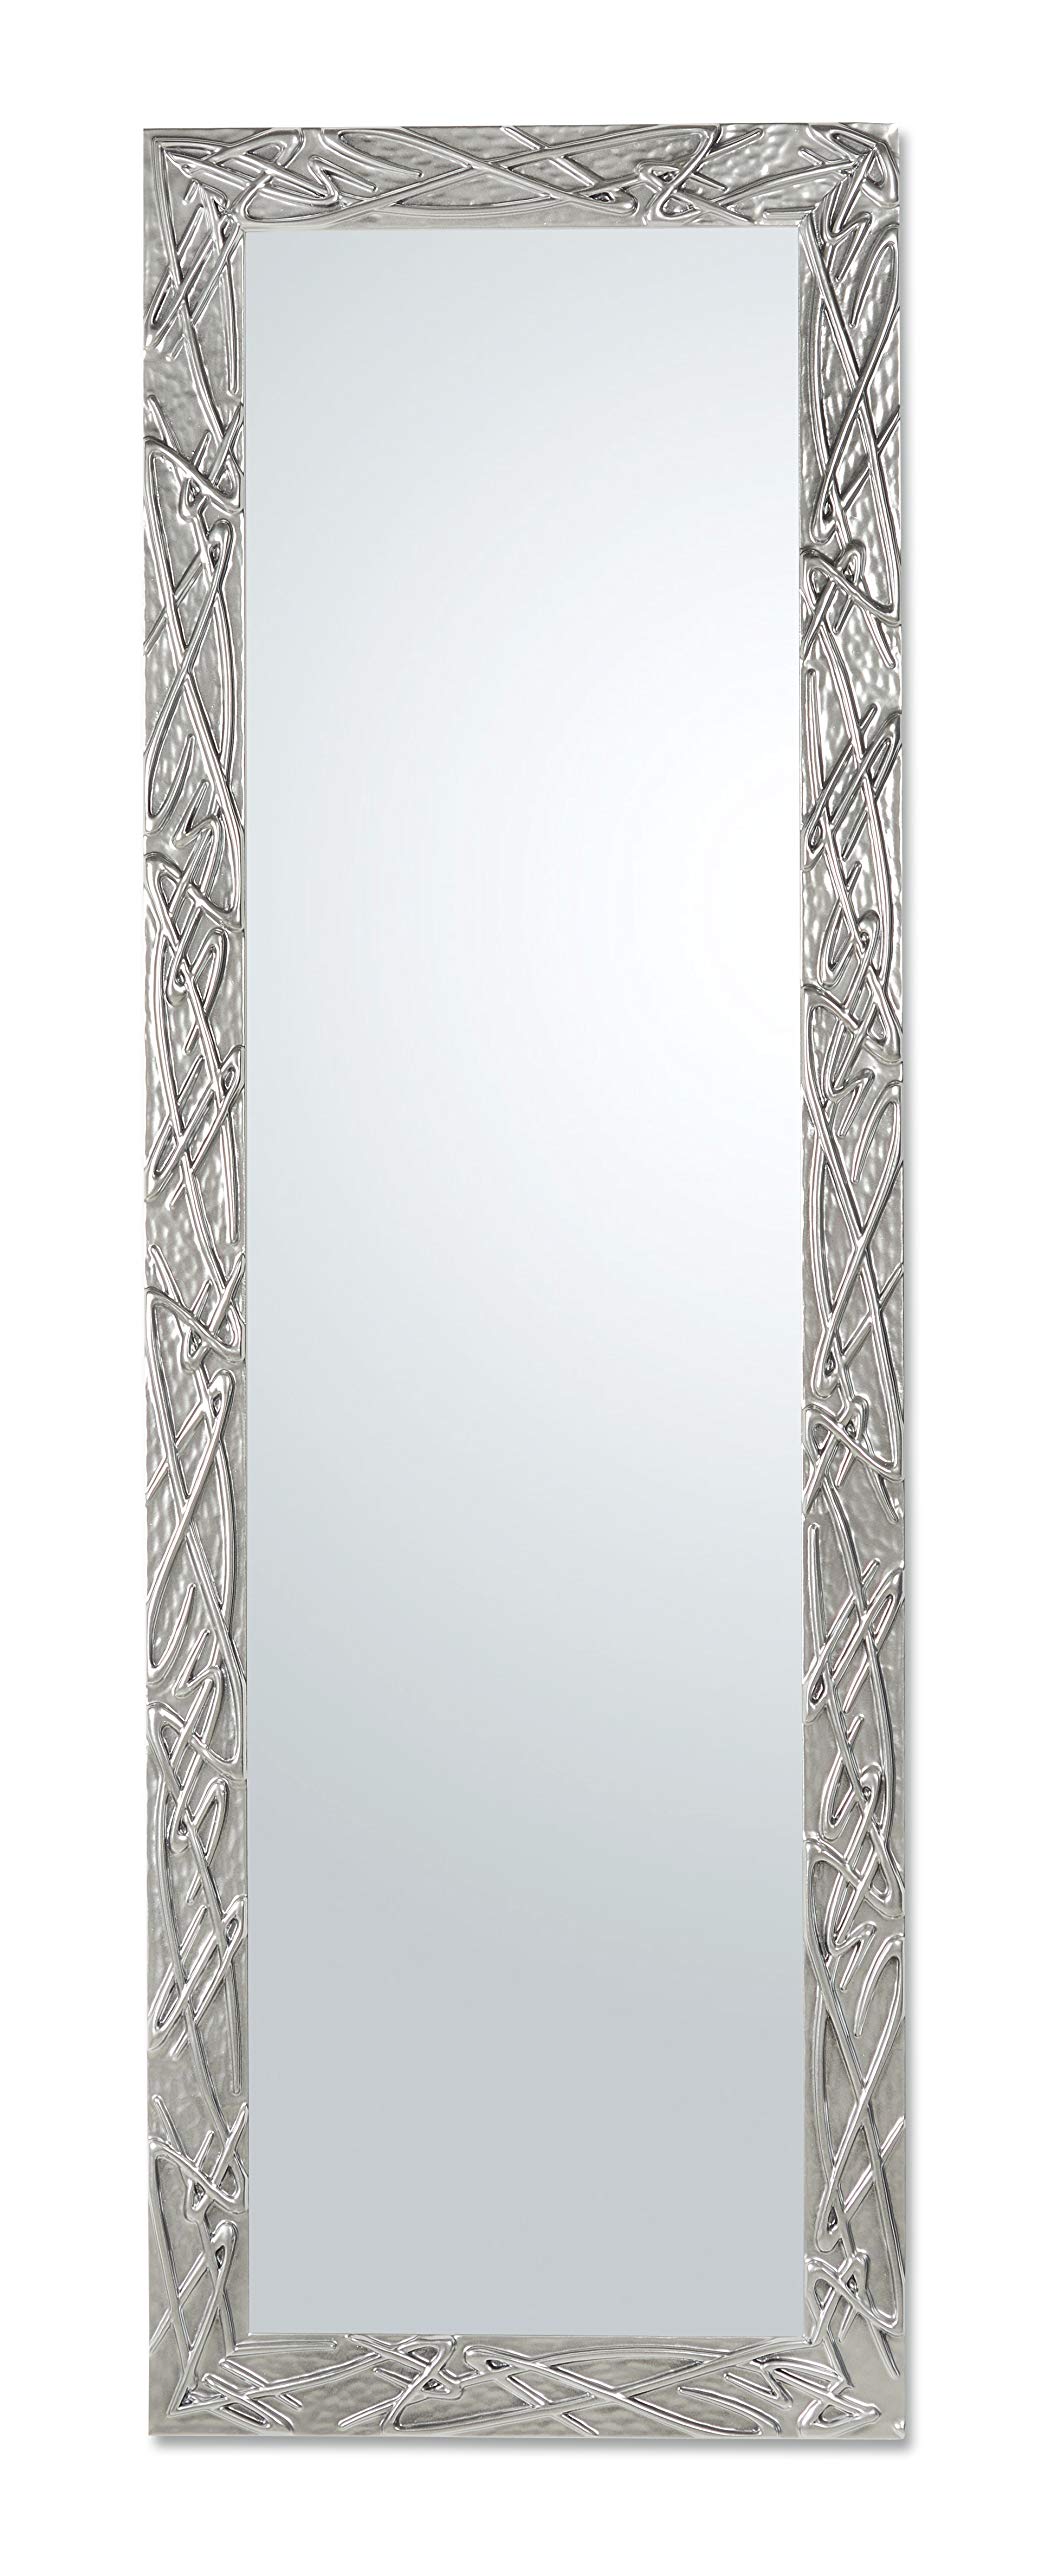 MO.WA Spiegel Wandspiegel Lehnspiegel Holzrahmen Modern cm. 47x142 Vertikal und Quer, Silber Glanz Spiegel Flurspiegel Holzspiegel Ganzkörperspiegel Bodenspiegel